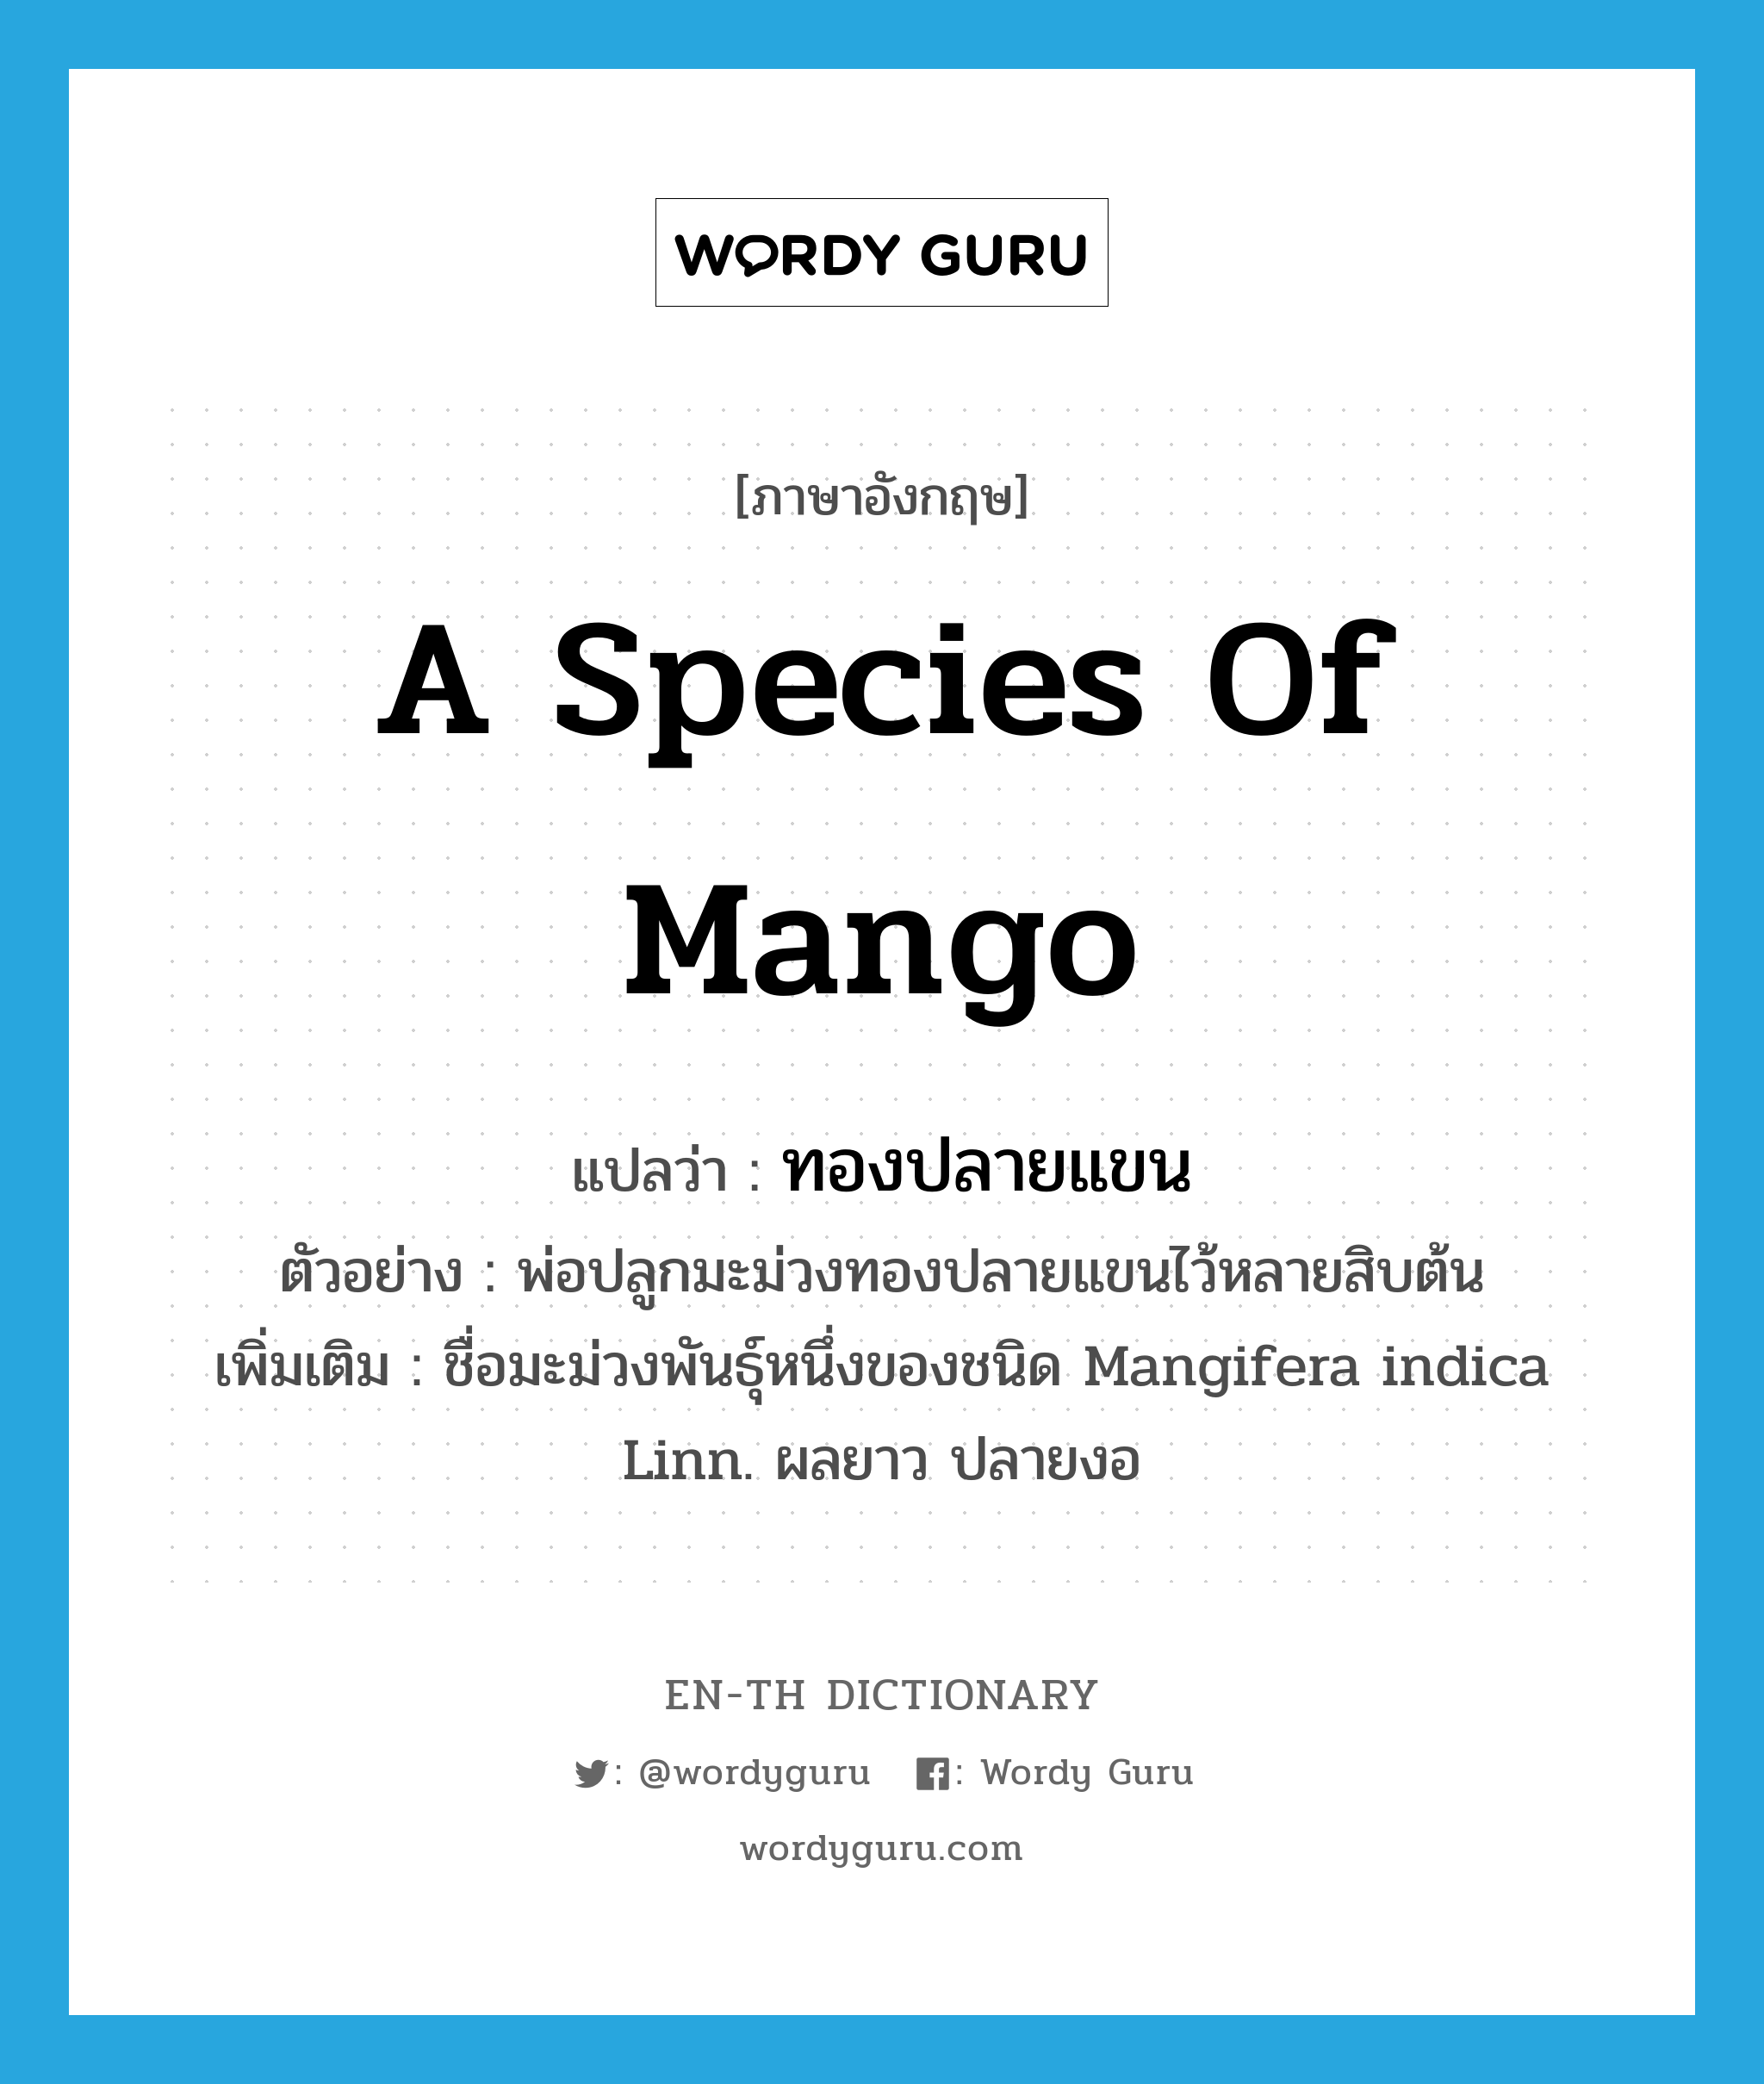 a species of mango แปลว่า?, คำศัพท์ภาษาอังกฤษ a species of mango แปลว่า ทองปลายแขน ประเภท N ตัวอย่าง พ่อปลูกมะม่วงทองปลายแขนไว้หลายสิบต้น เพิ่มเติม ชื่อมะม่วงพันธุ์หนึ่งของชนิด Mangifera indica Linn. ผลยาว ปลายงอ หมวด N